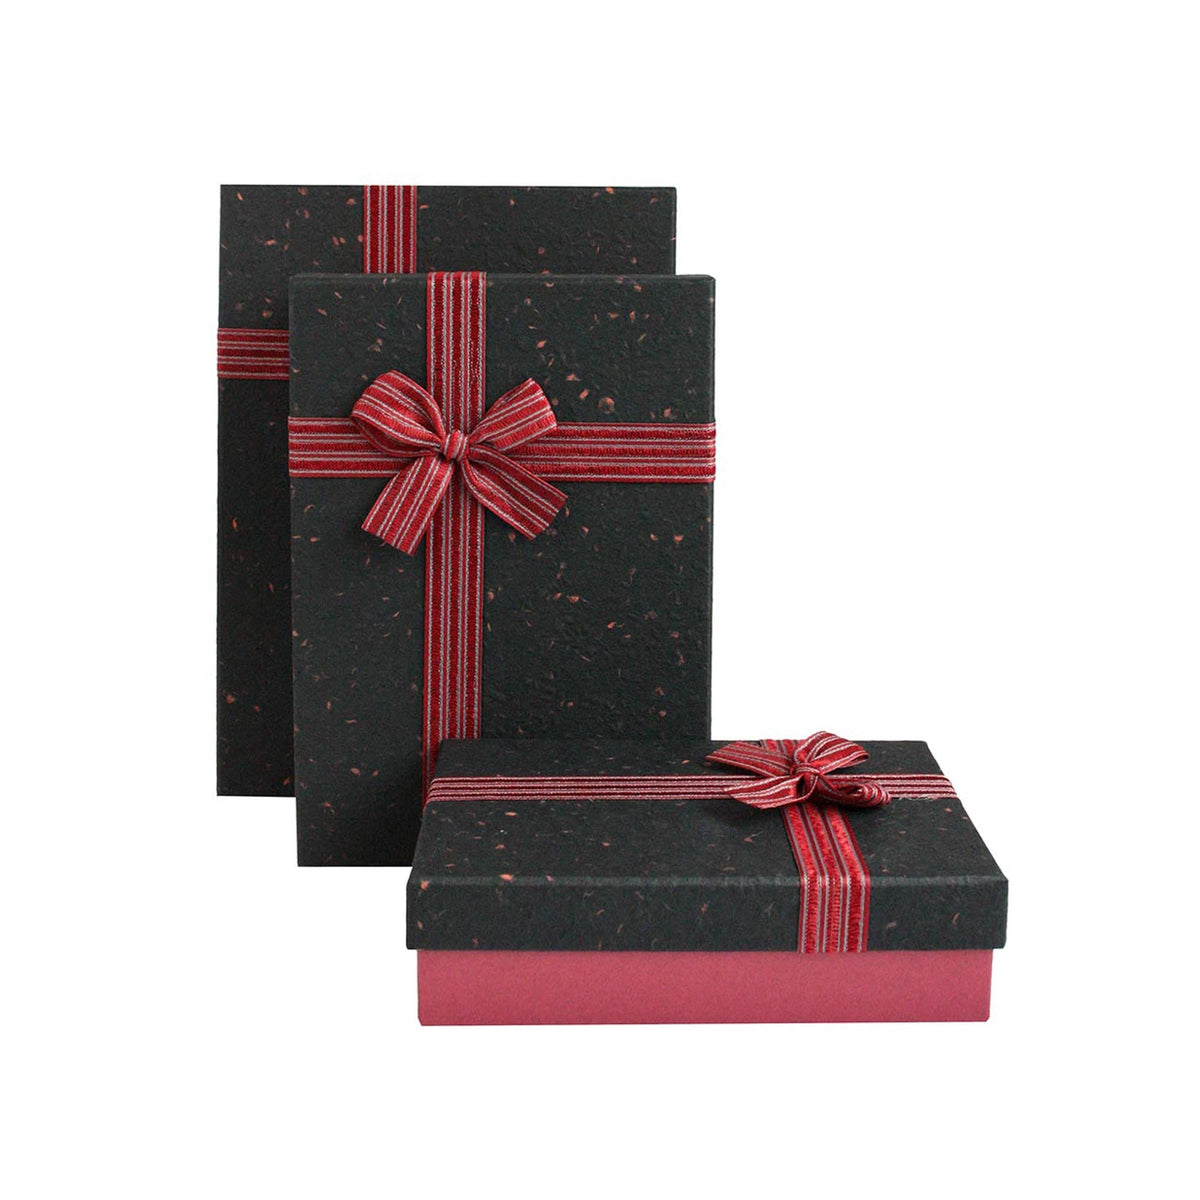 Elegant Burgundy/Black Gift Boxes - Set of 3 (Sizes Available)